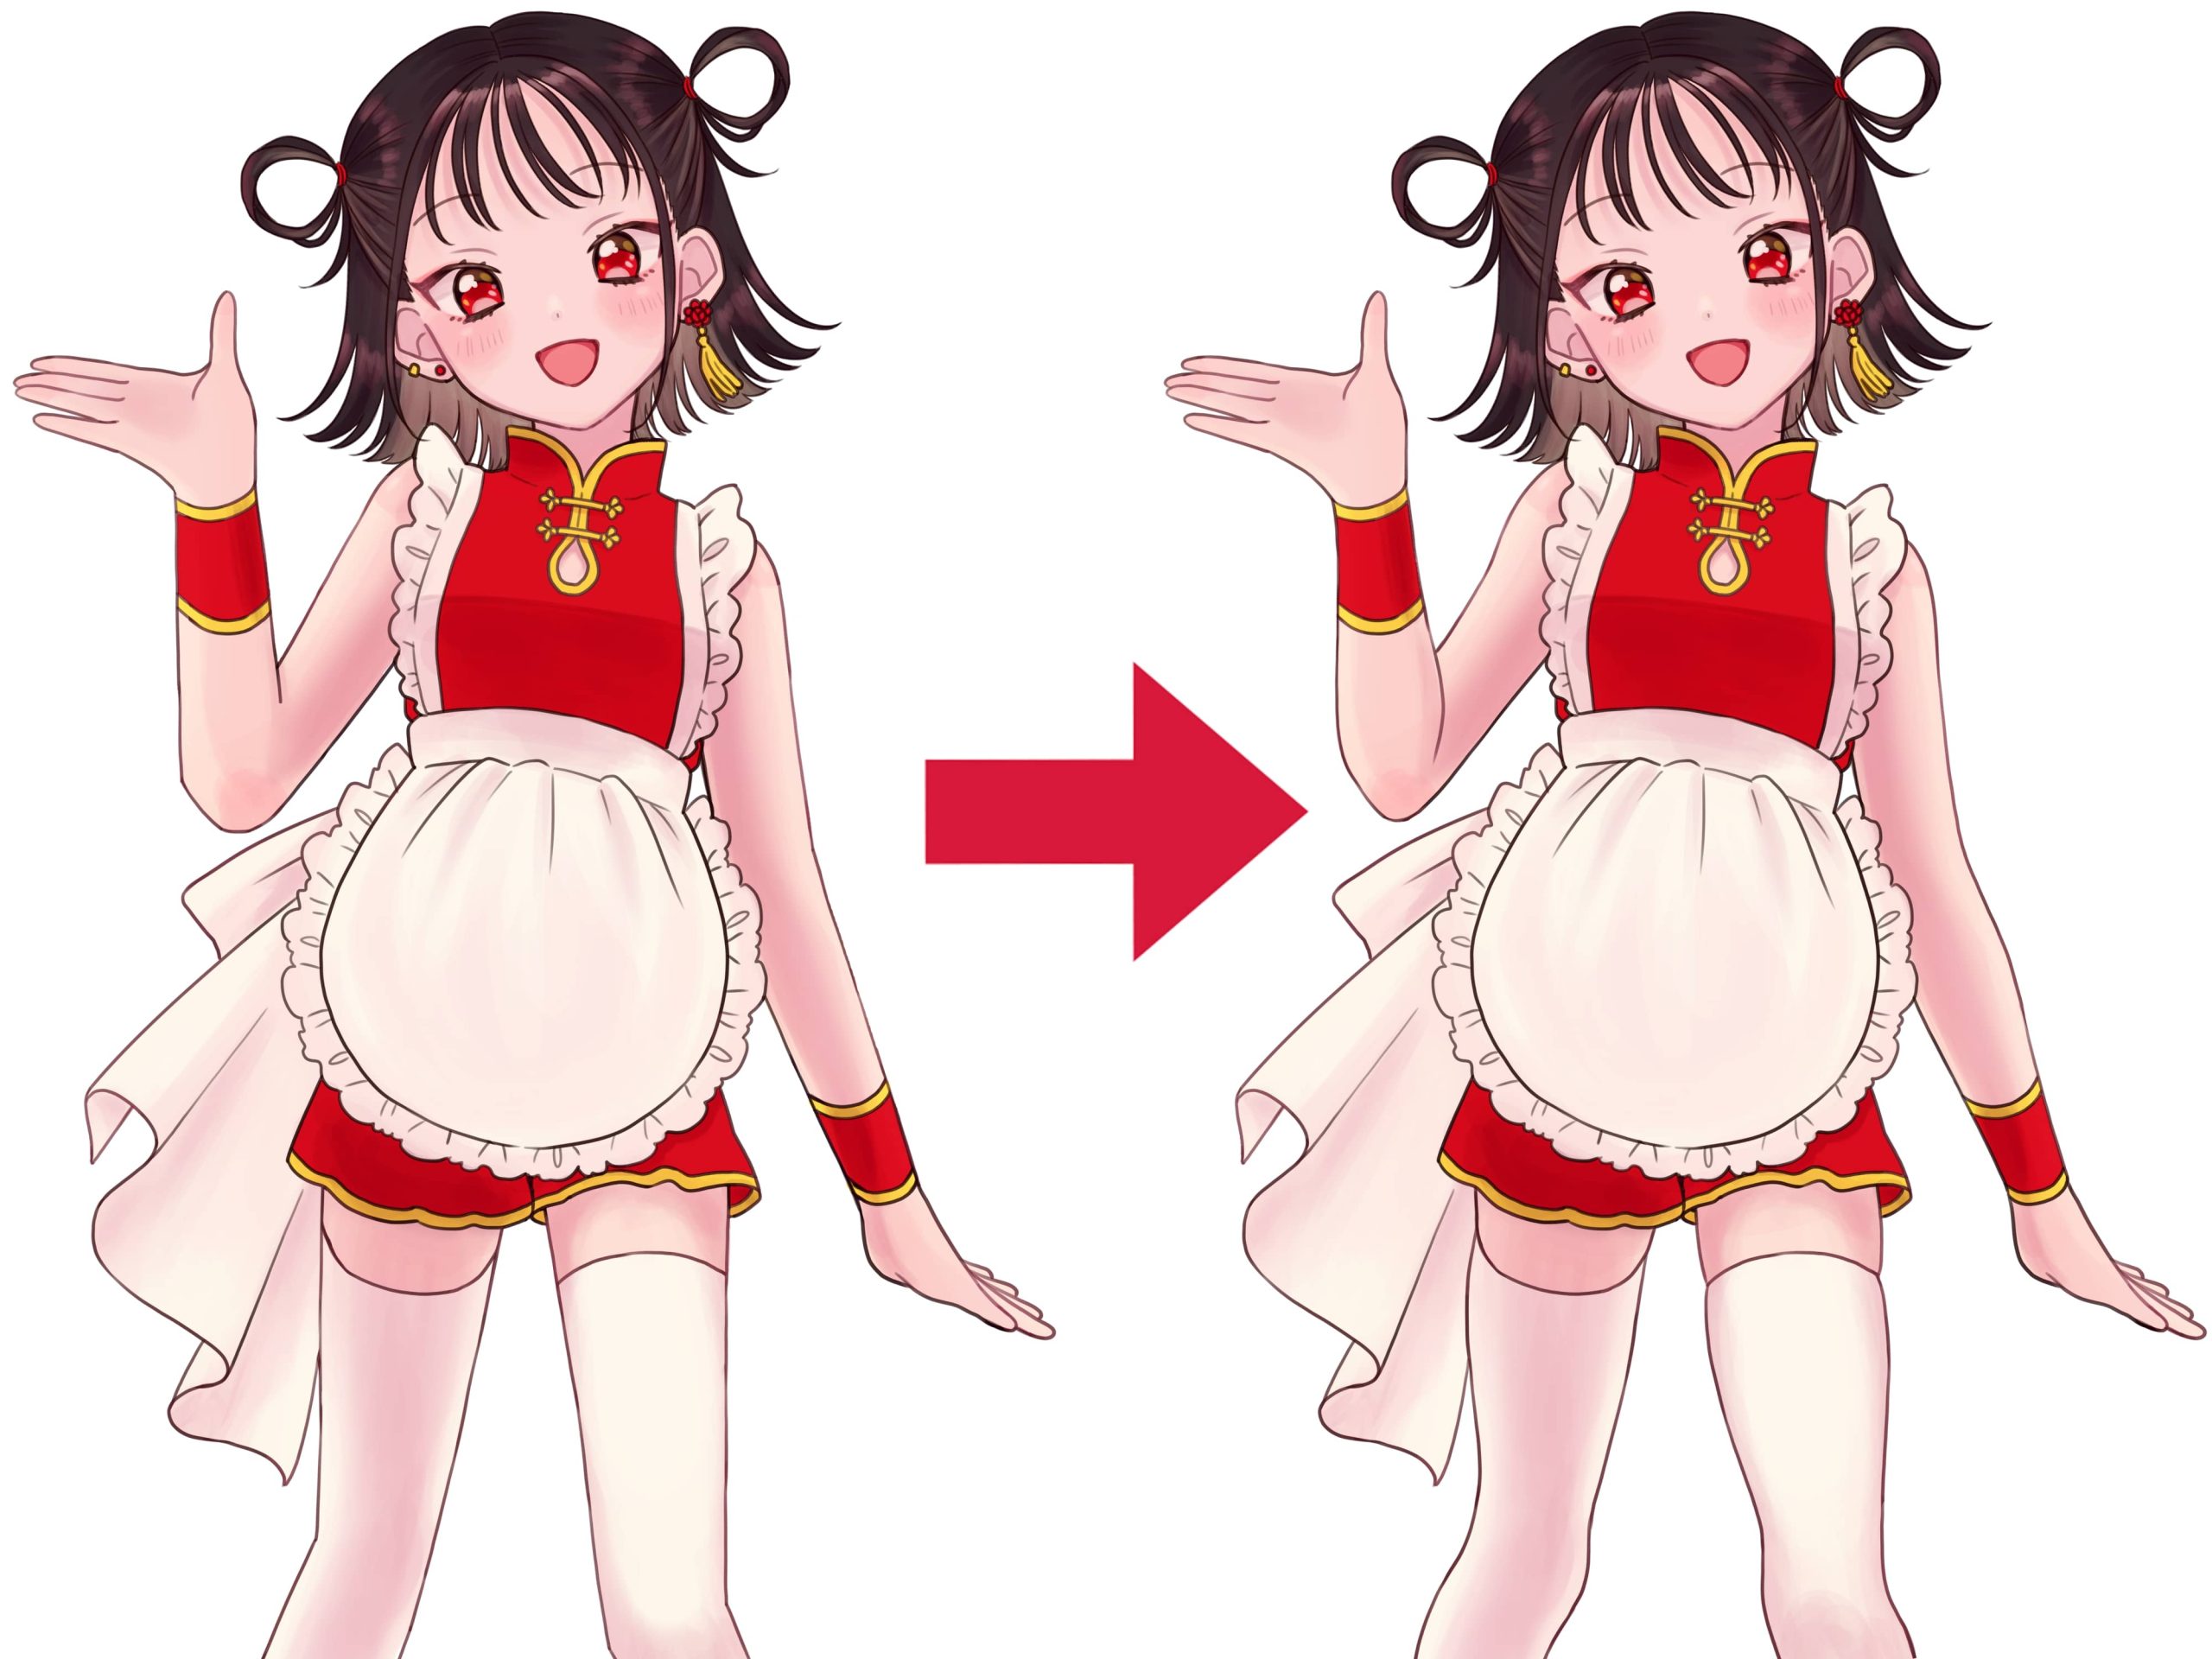 Antes y después de utilizar los consejos del tutorial: 【Para principiantes】Cómo dibujar el cuerpo de una chica de manera realista y atractiva en Medibang Paint